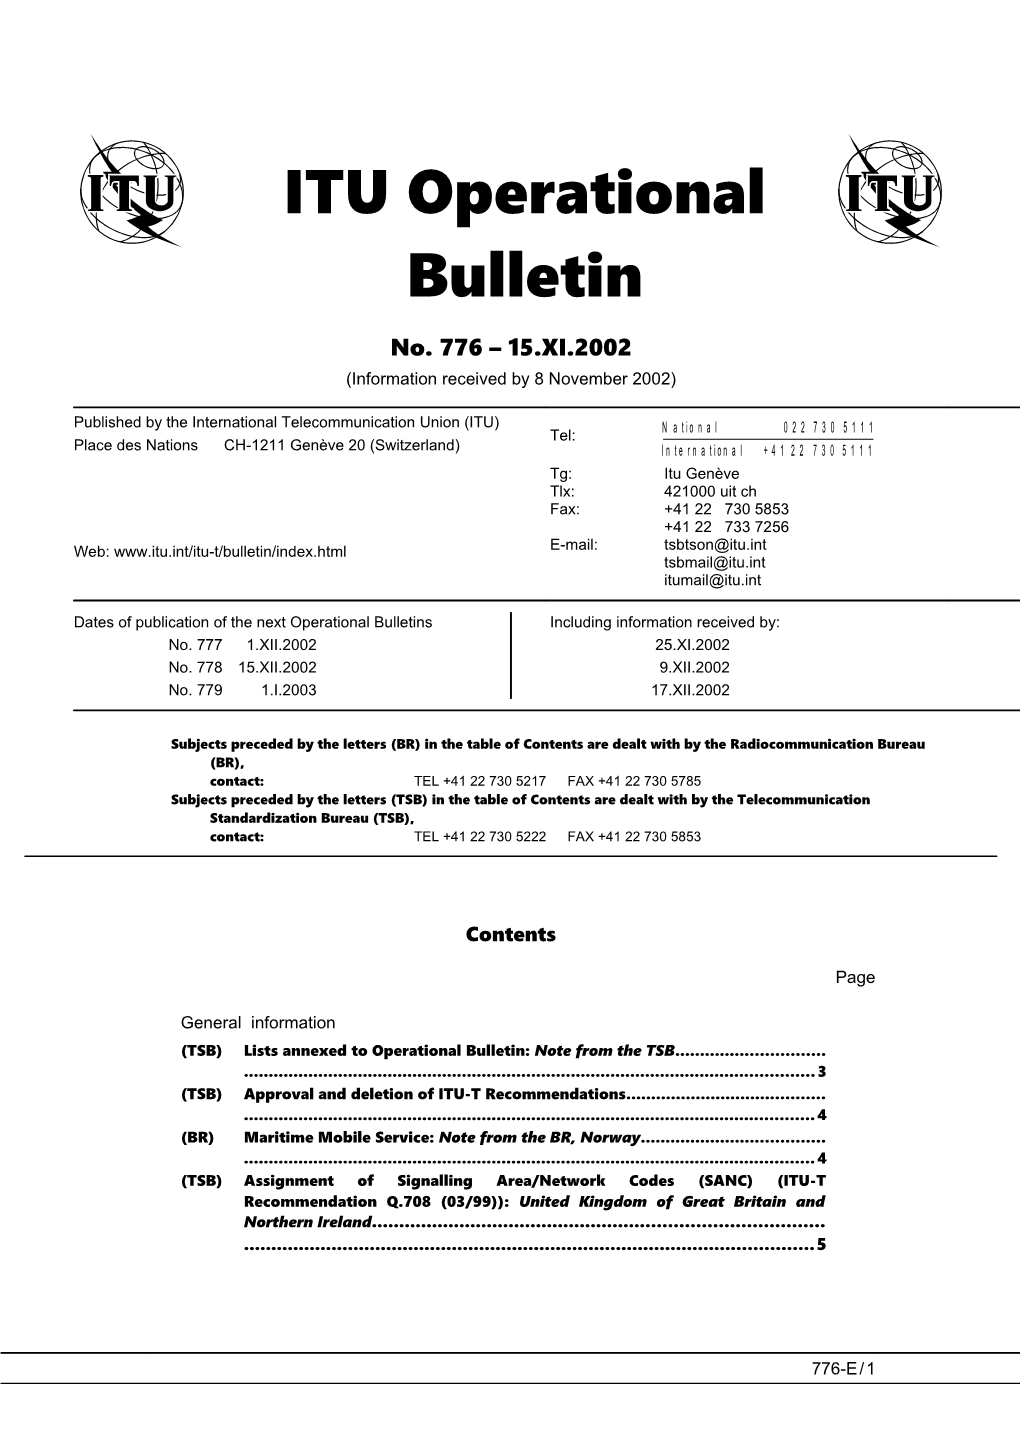 ITU Operational Bulletin 776 - 15.XI.2002